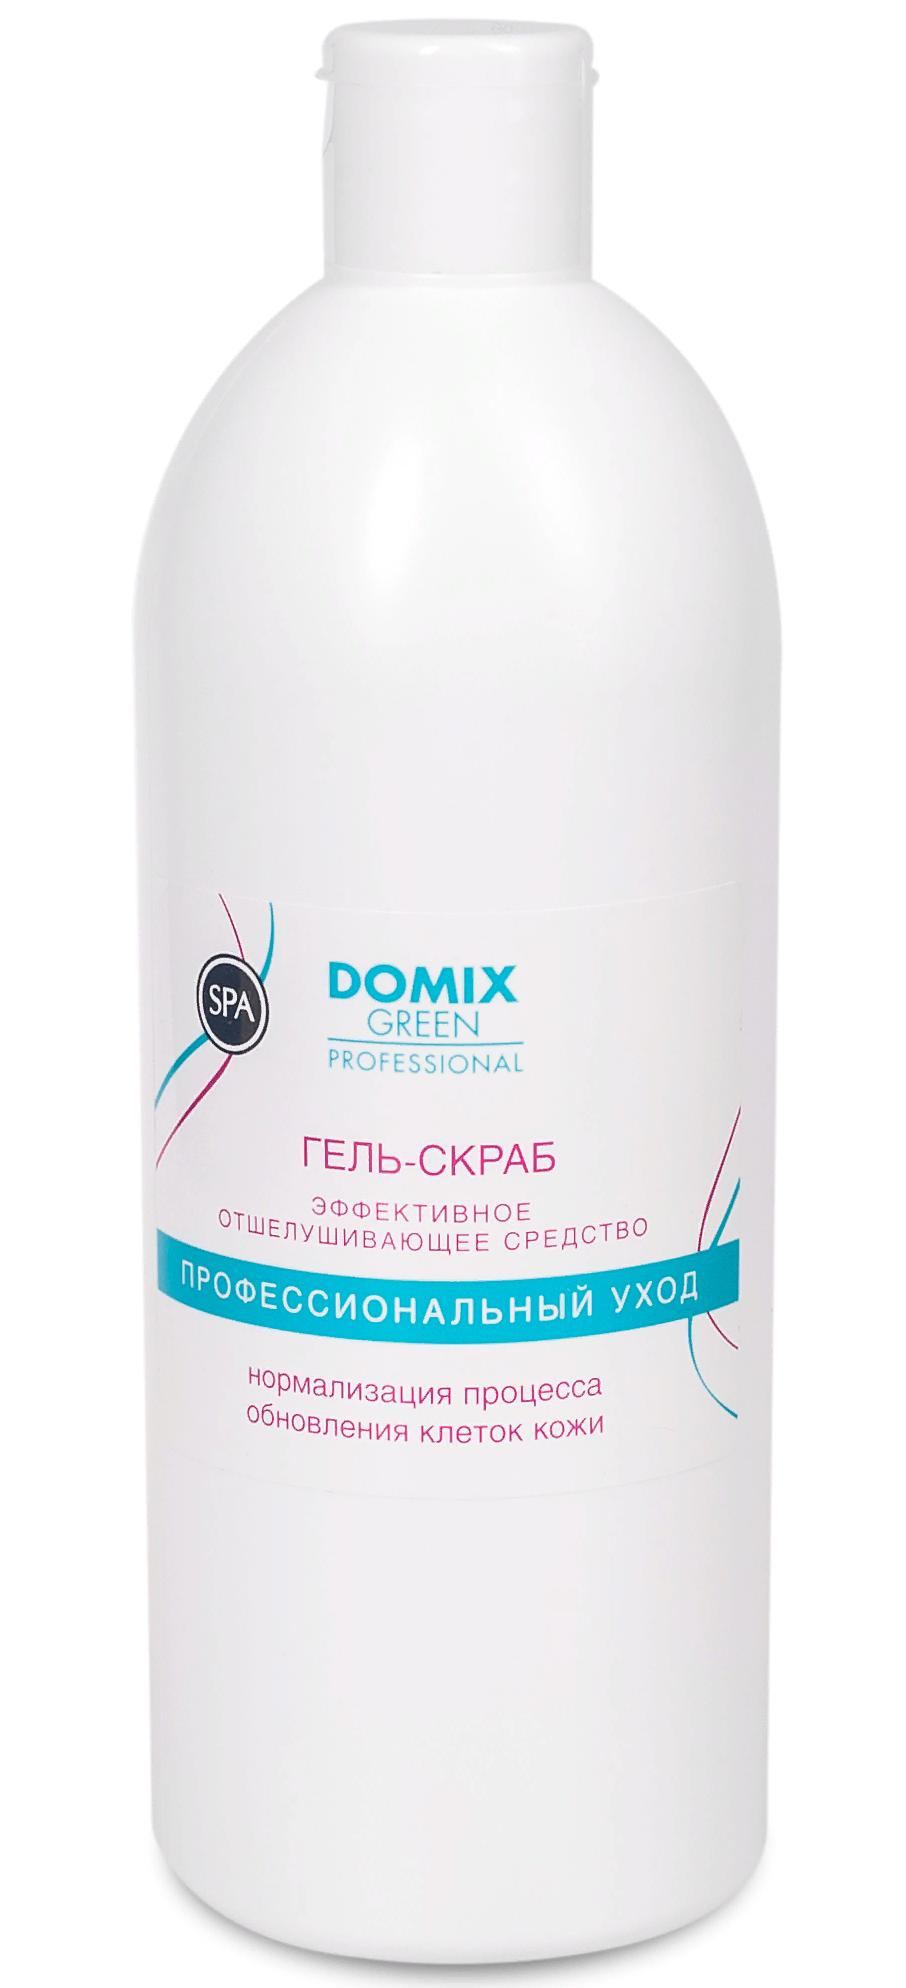 DOMIX Гель-скраб с серебром / DGP 500 мл